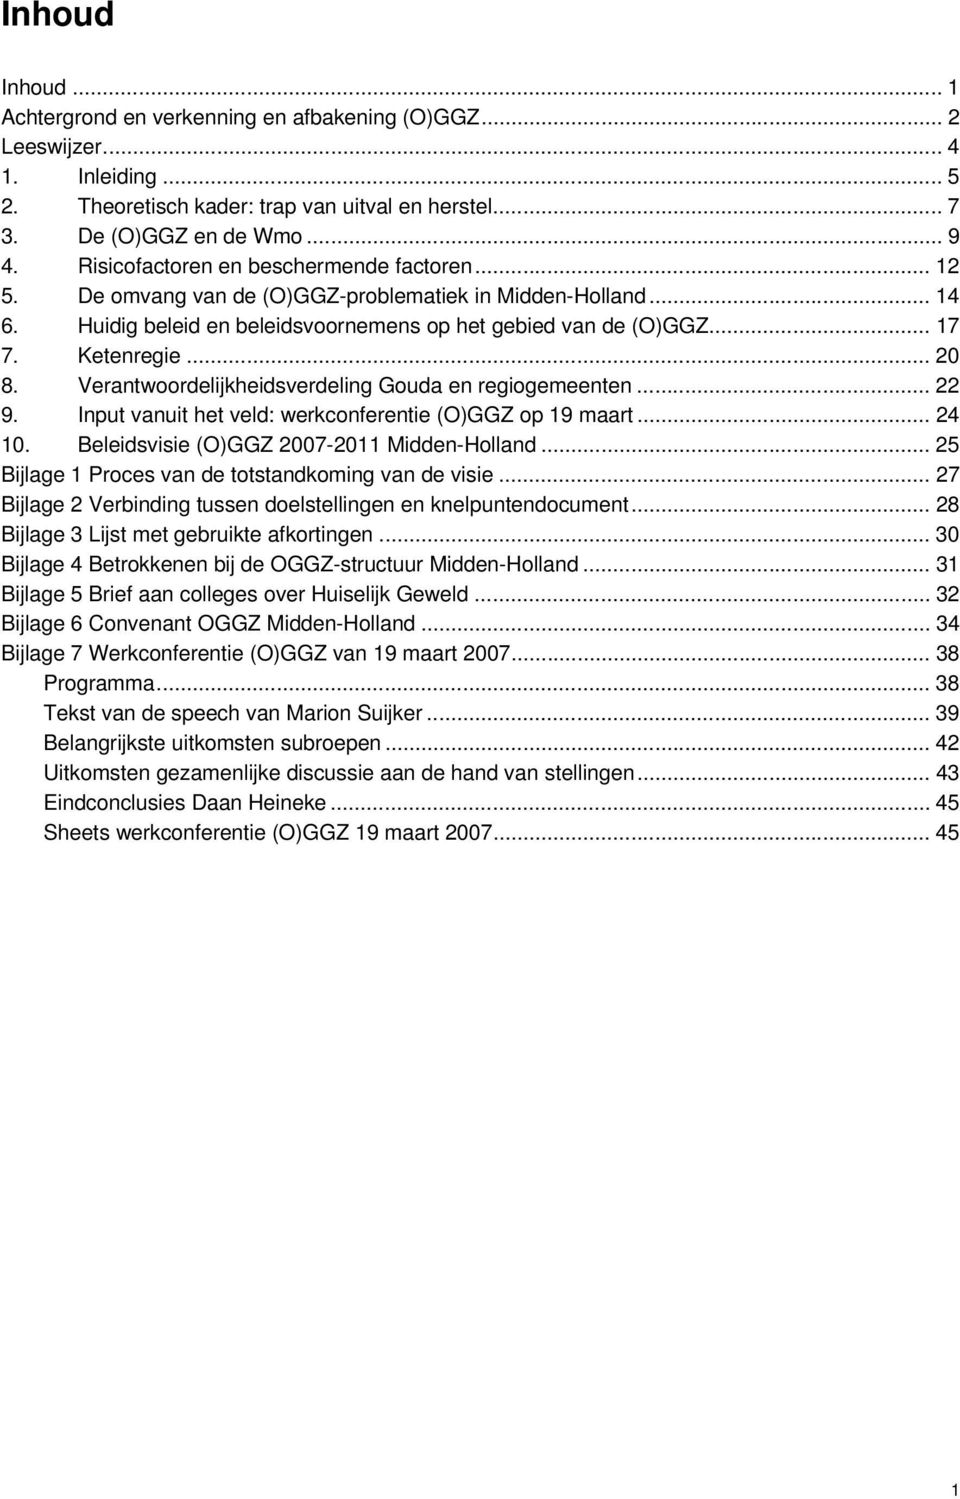 .. 20 8. Verantwoordelijkheidsverdeling Gouda en regiogemeenten... 22 9. Input vanuit het veld: werkconferentie (O)GGZ op 19 maart... 24 10. Beleidsvisie (O)GGZ 2007-2011 Midden-Holland.